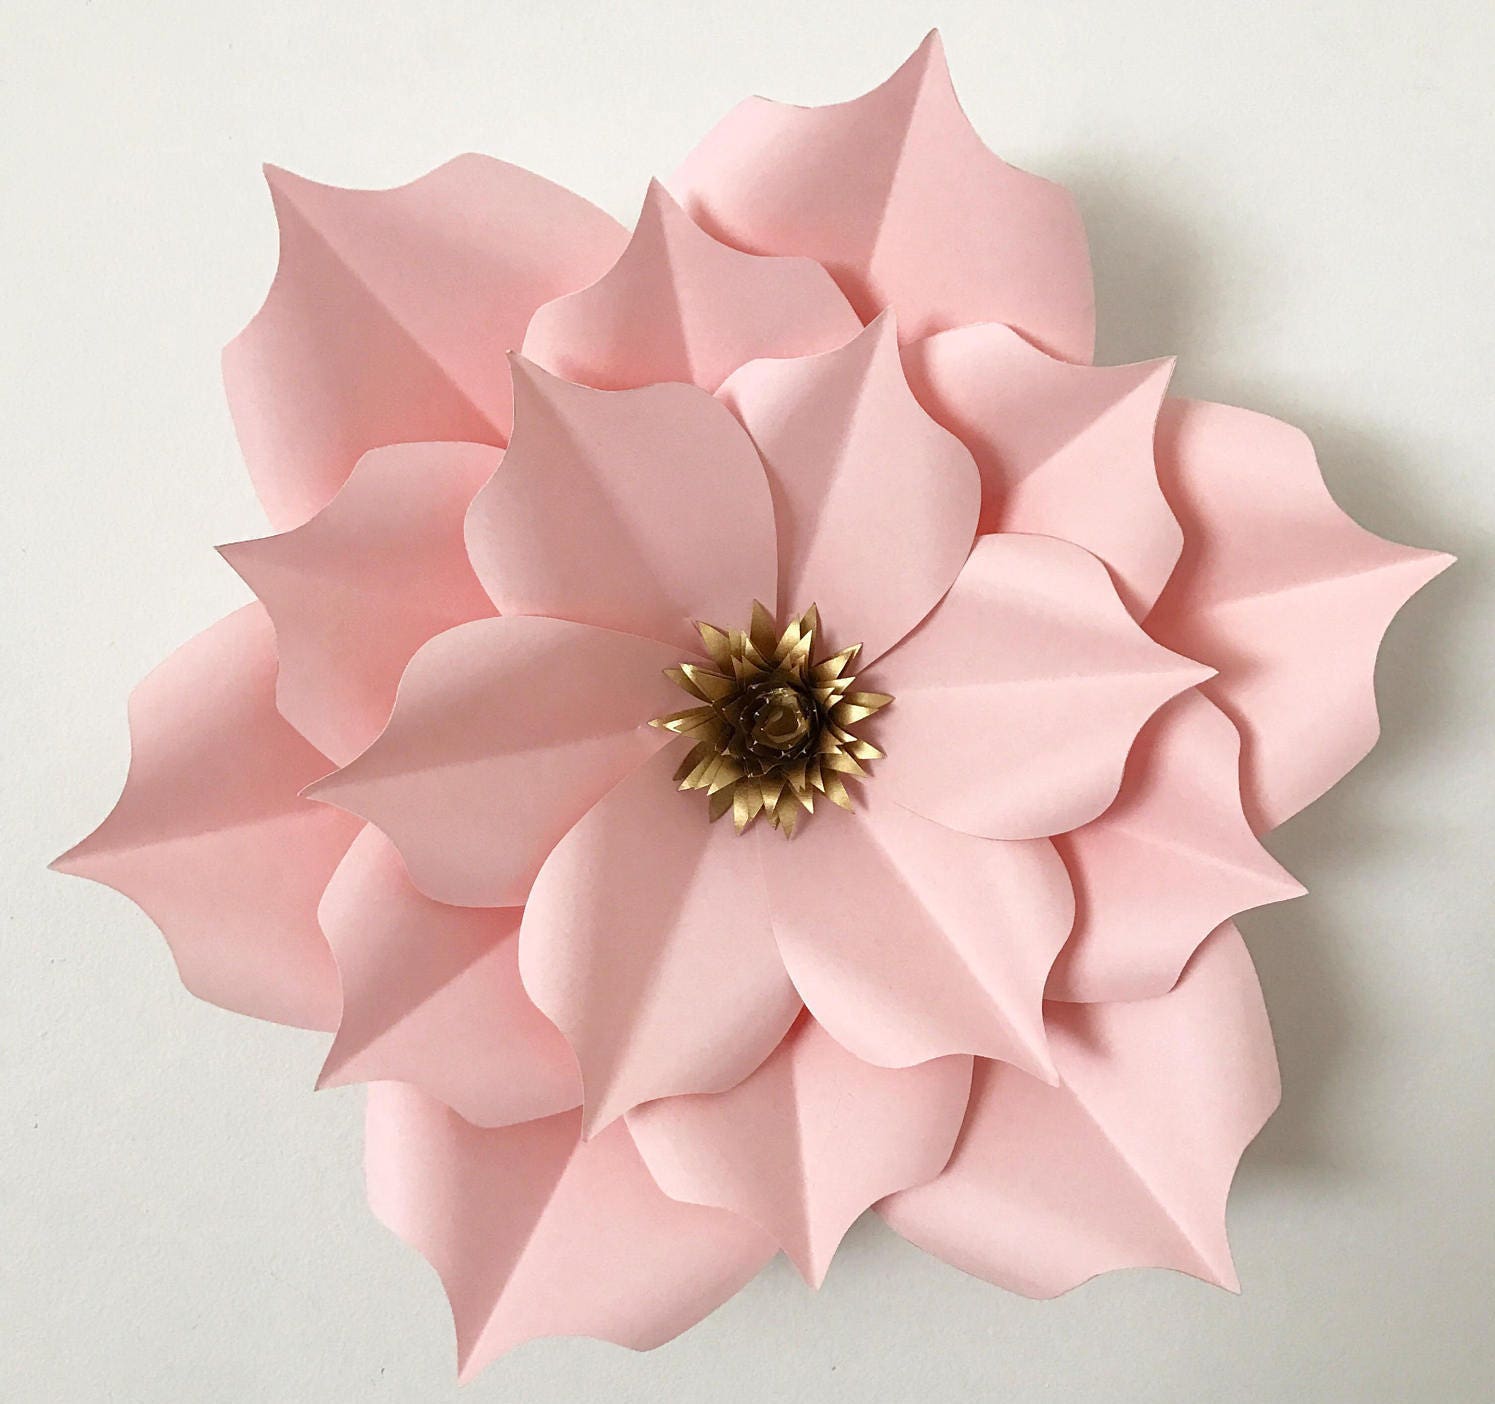 Download SVG Petal 5 Paper Flower Template DIGITAL Version with Base